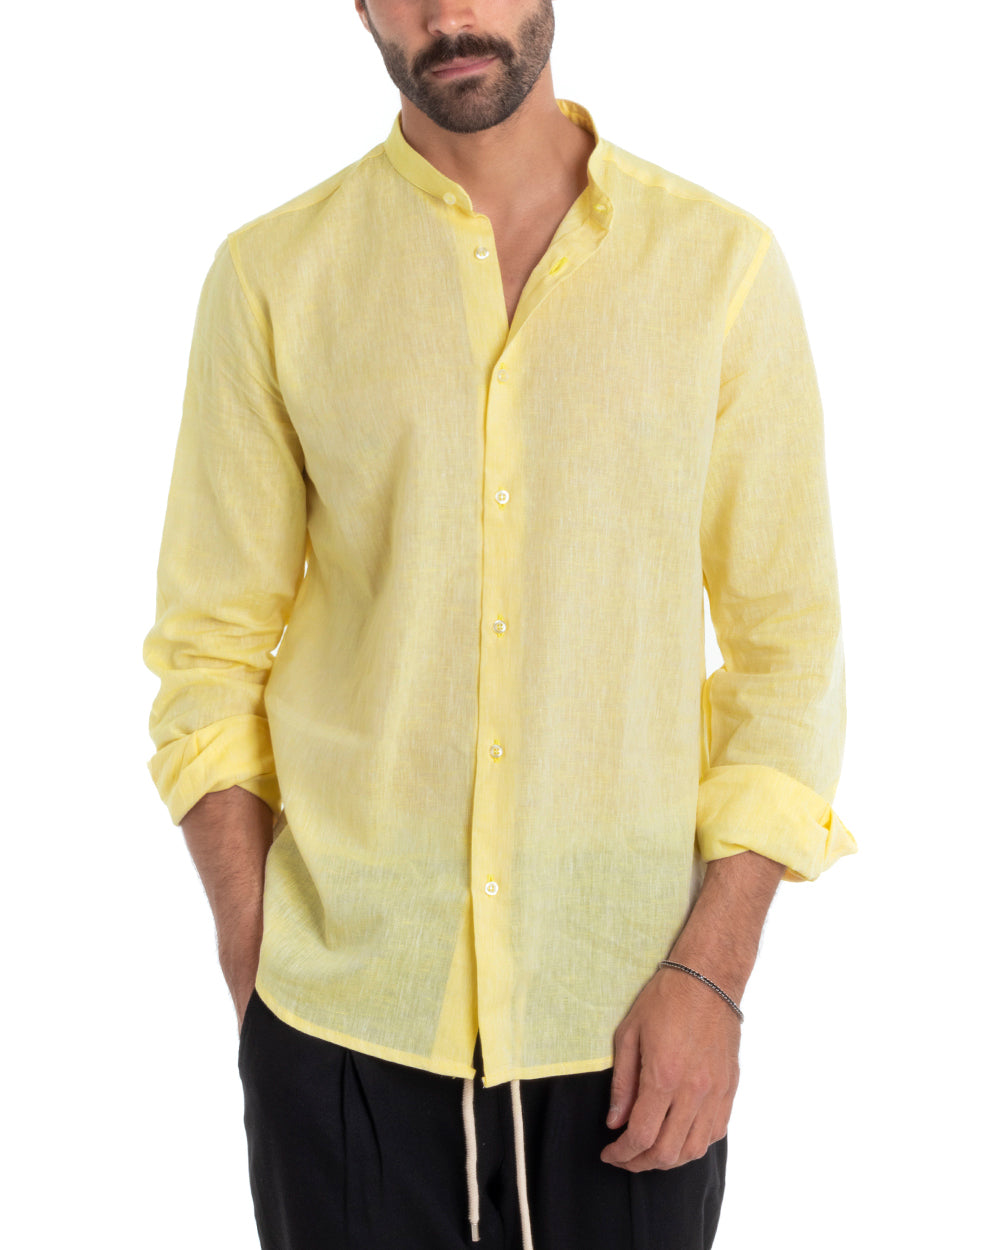 Men's Mandarin Collar Tailored Shirt Long Sleeve Melange Linen Light Yellow GIOSAL-C2692A